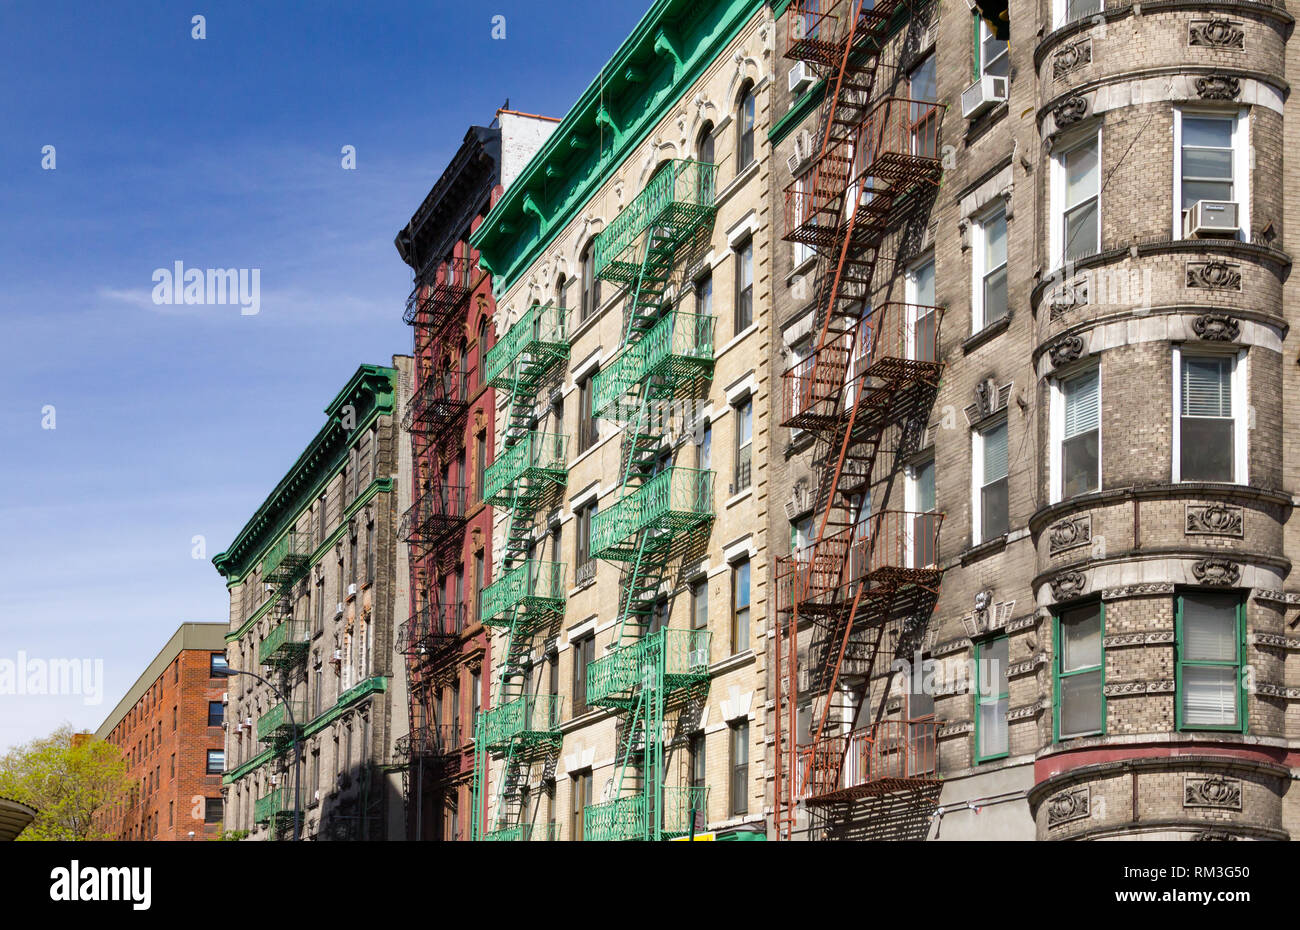 Vieux bâtiments historiques colorés à l'intersection de Mott et Kenmare Street dans le quartier de Nolita à Manhattan, New York City Banque D'Images